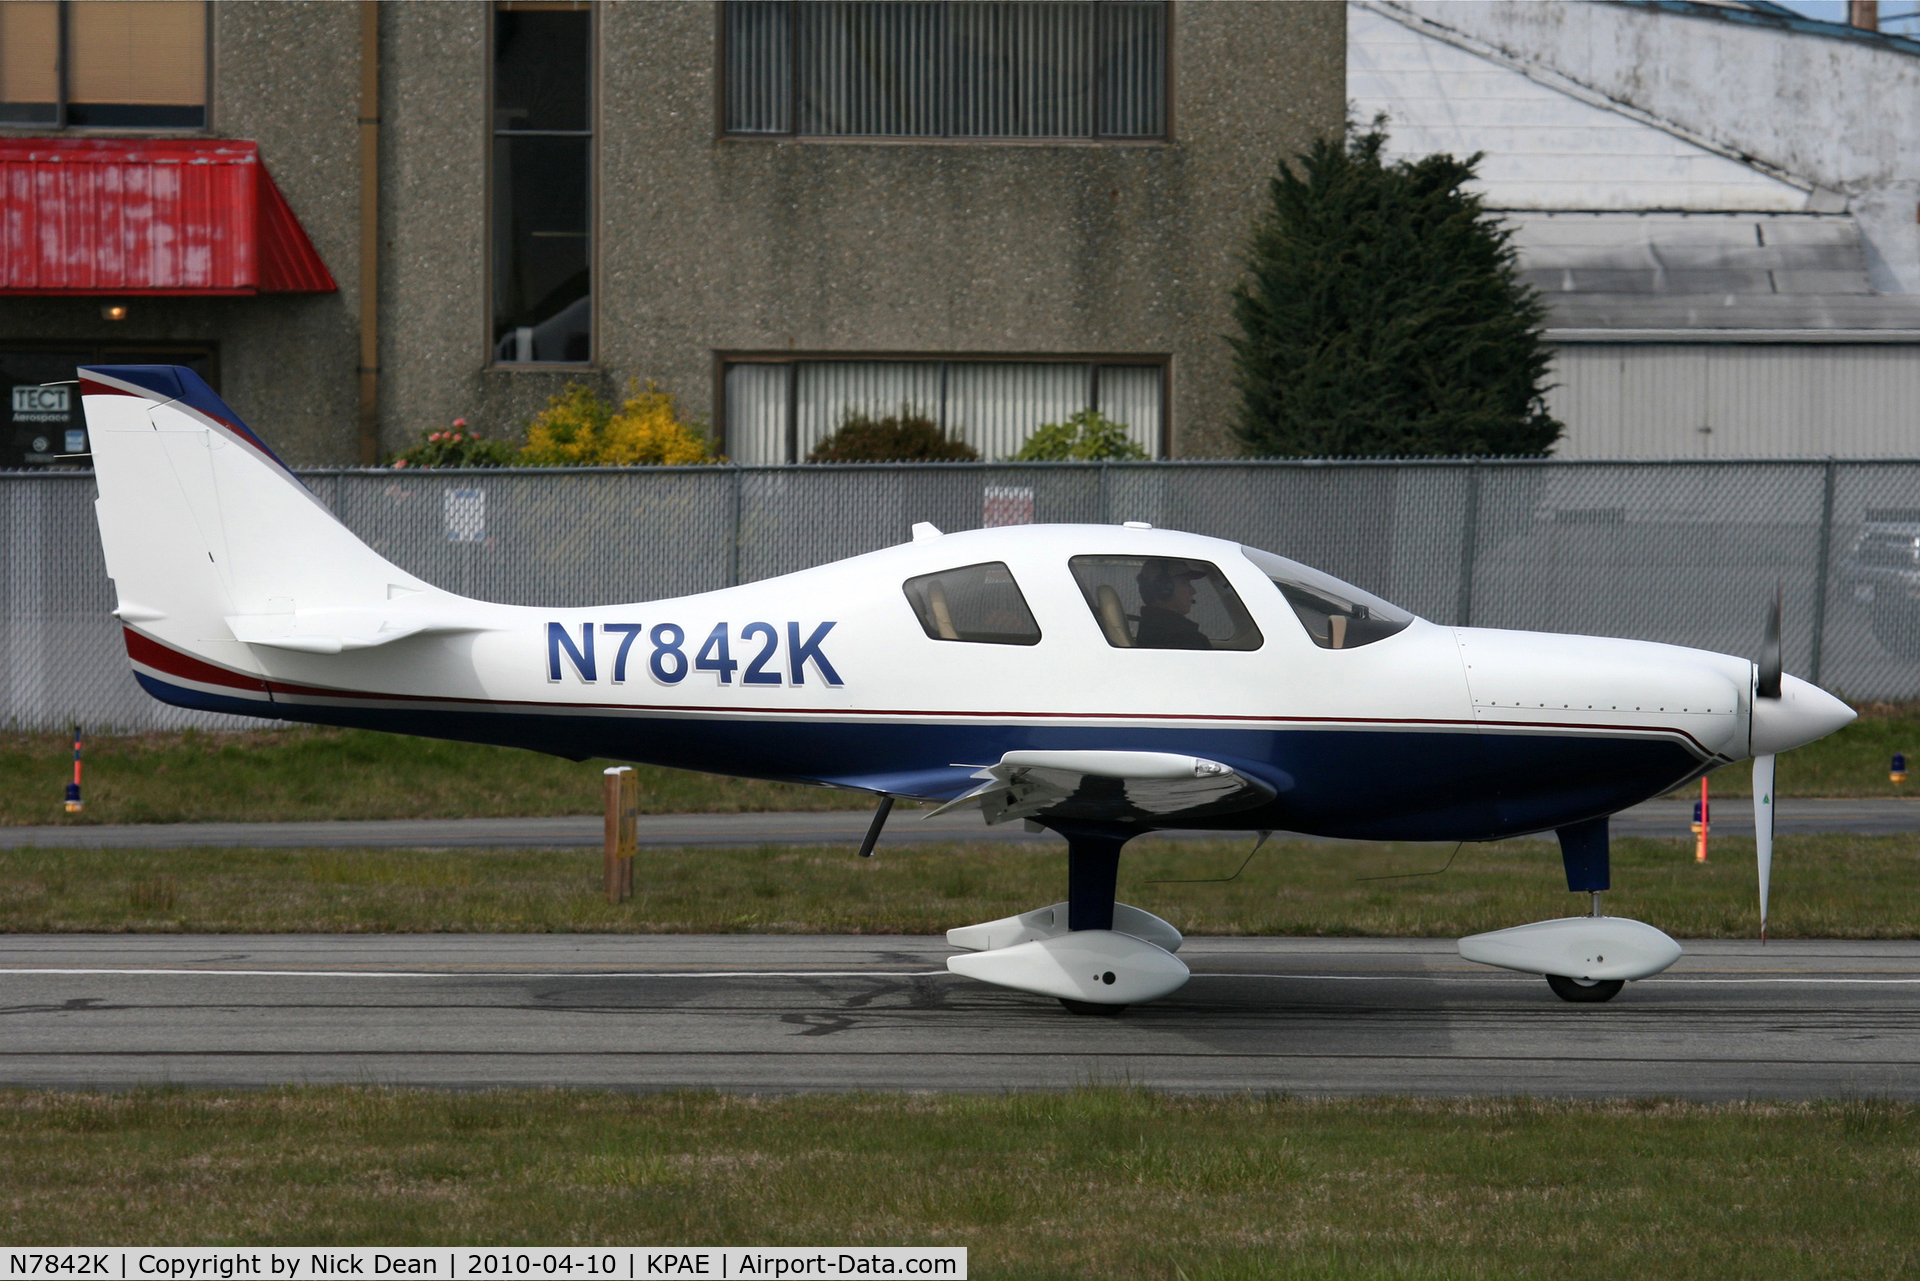 N7842K, 2008 Heizer I J ESP C/N 001, KPAE